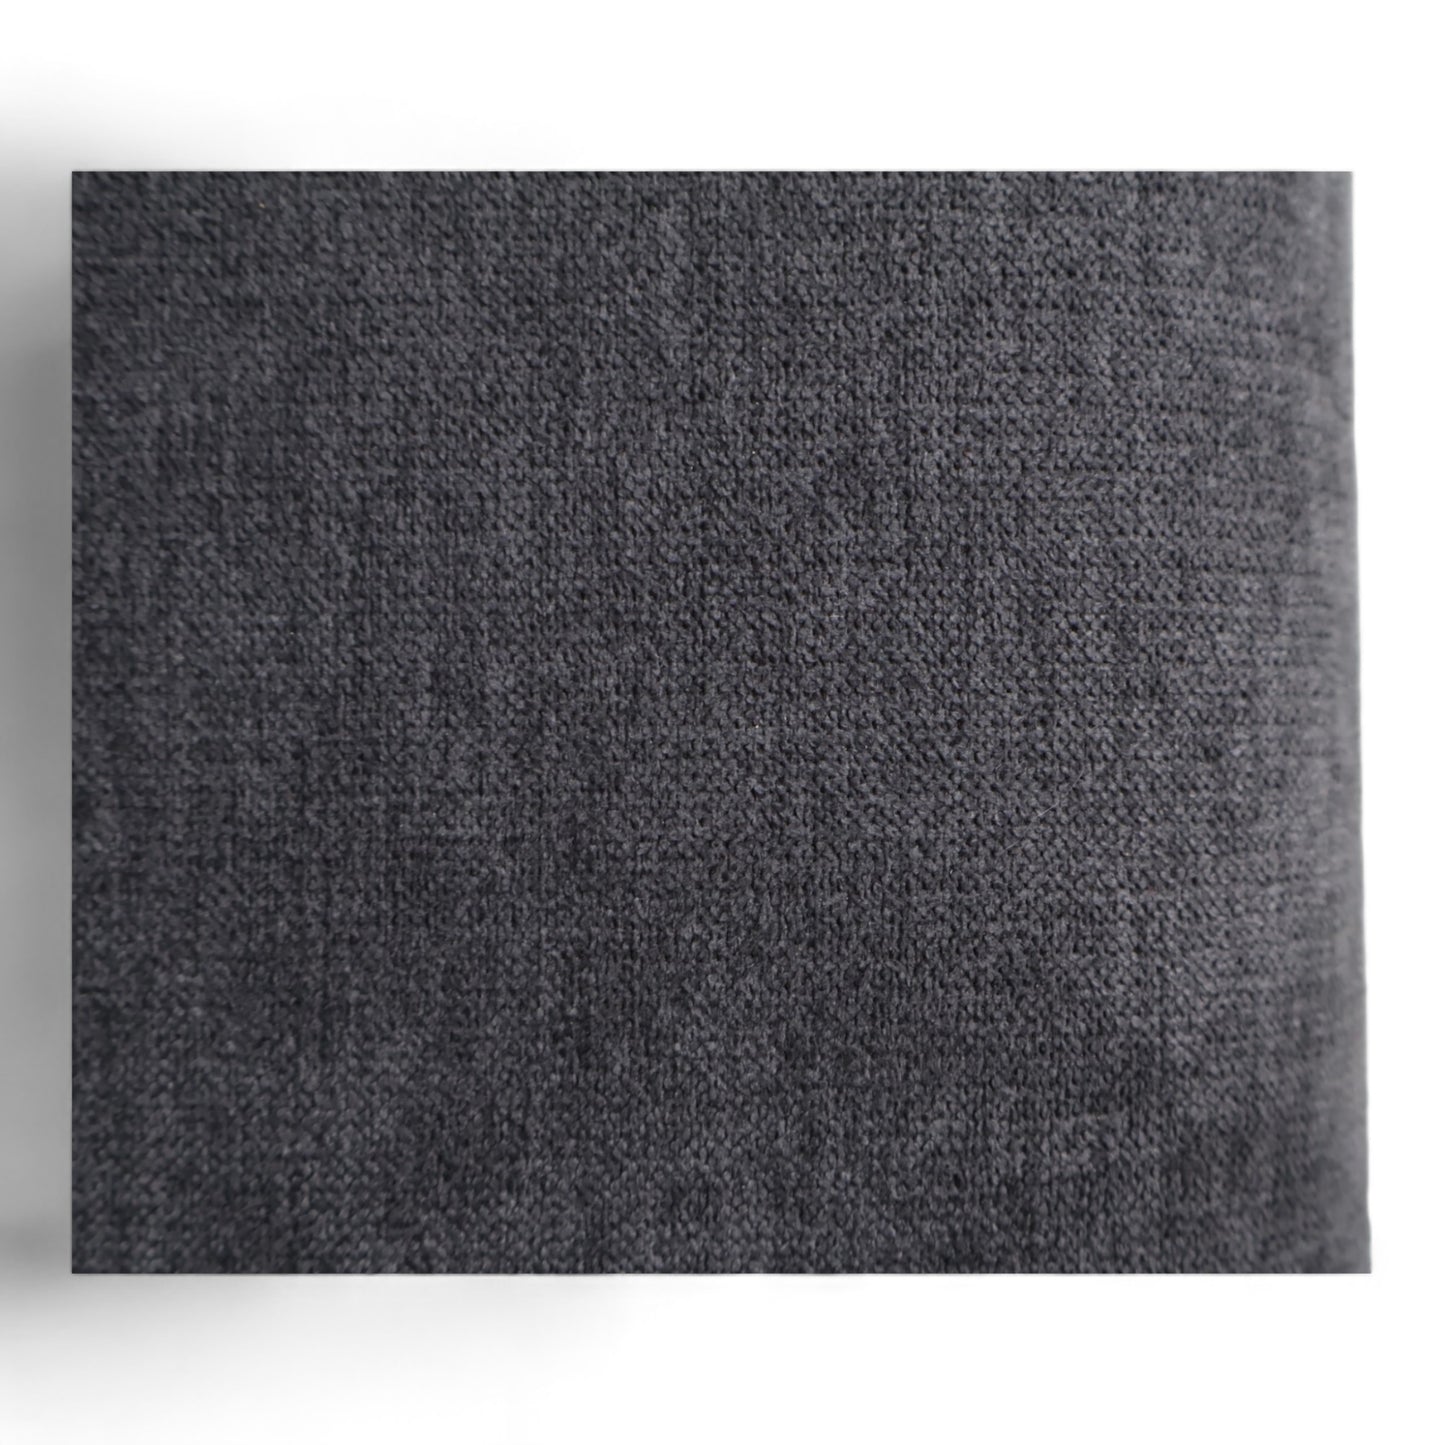 Nyrenset | Komfortabel mørk grå Mora elektrisk recliner fra A-Møbler